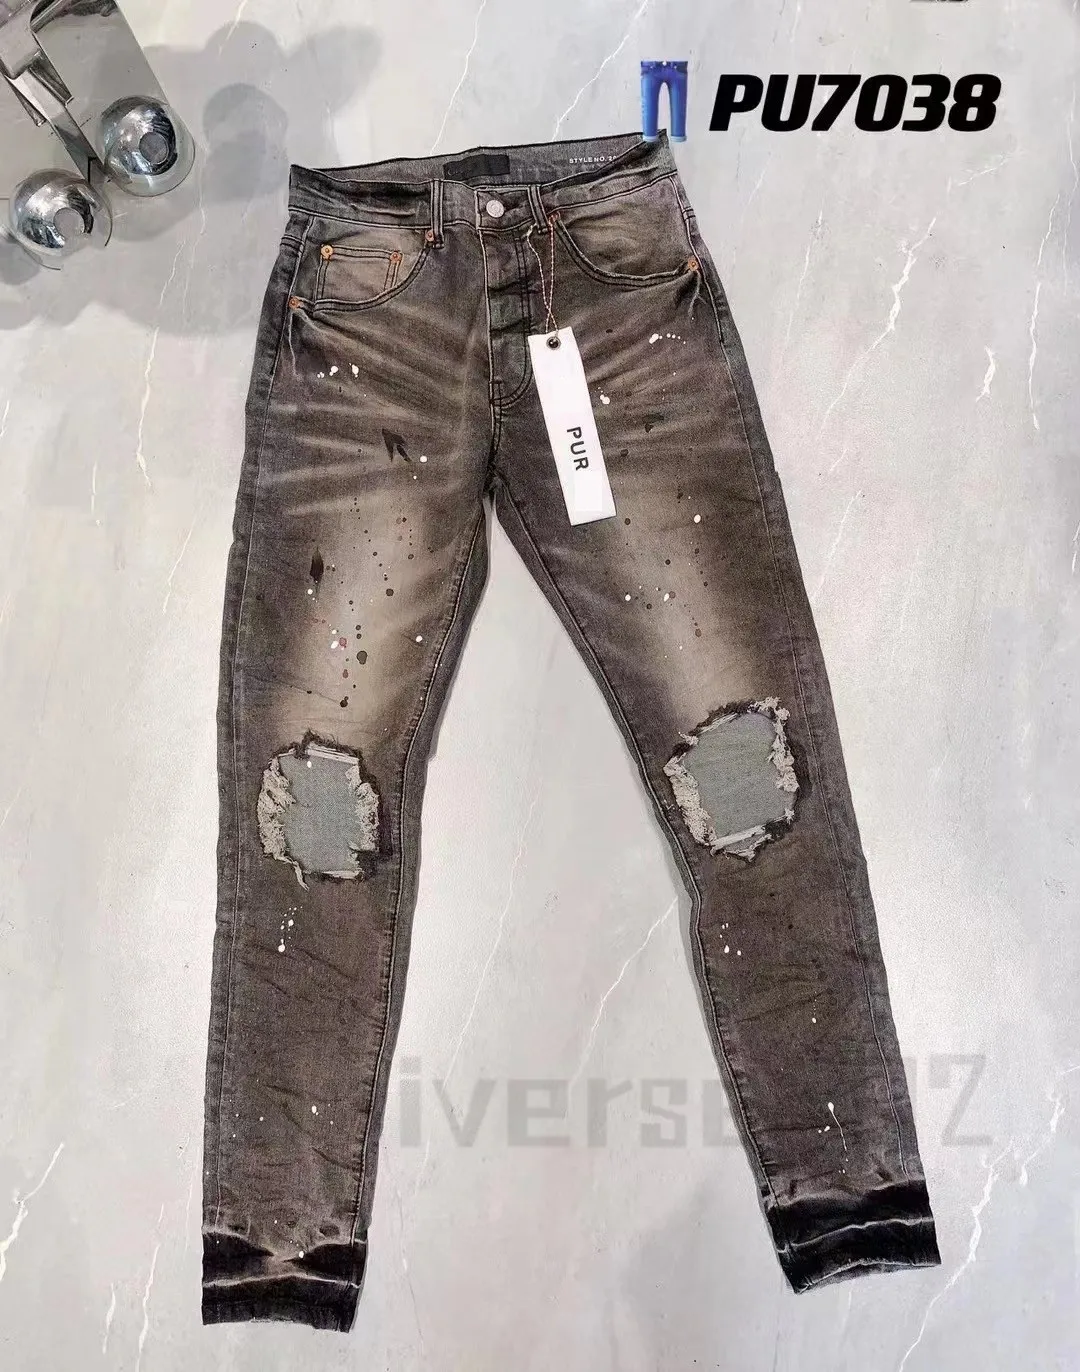 Nouveau haute qualité hommes violet jeans designer jeans mode en détresse déchiré denim cargo pour hommes haute rue mode bleu jeans femmes hommes rock revival JeansFXOR